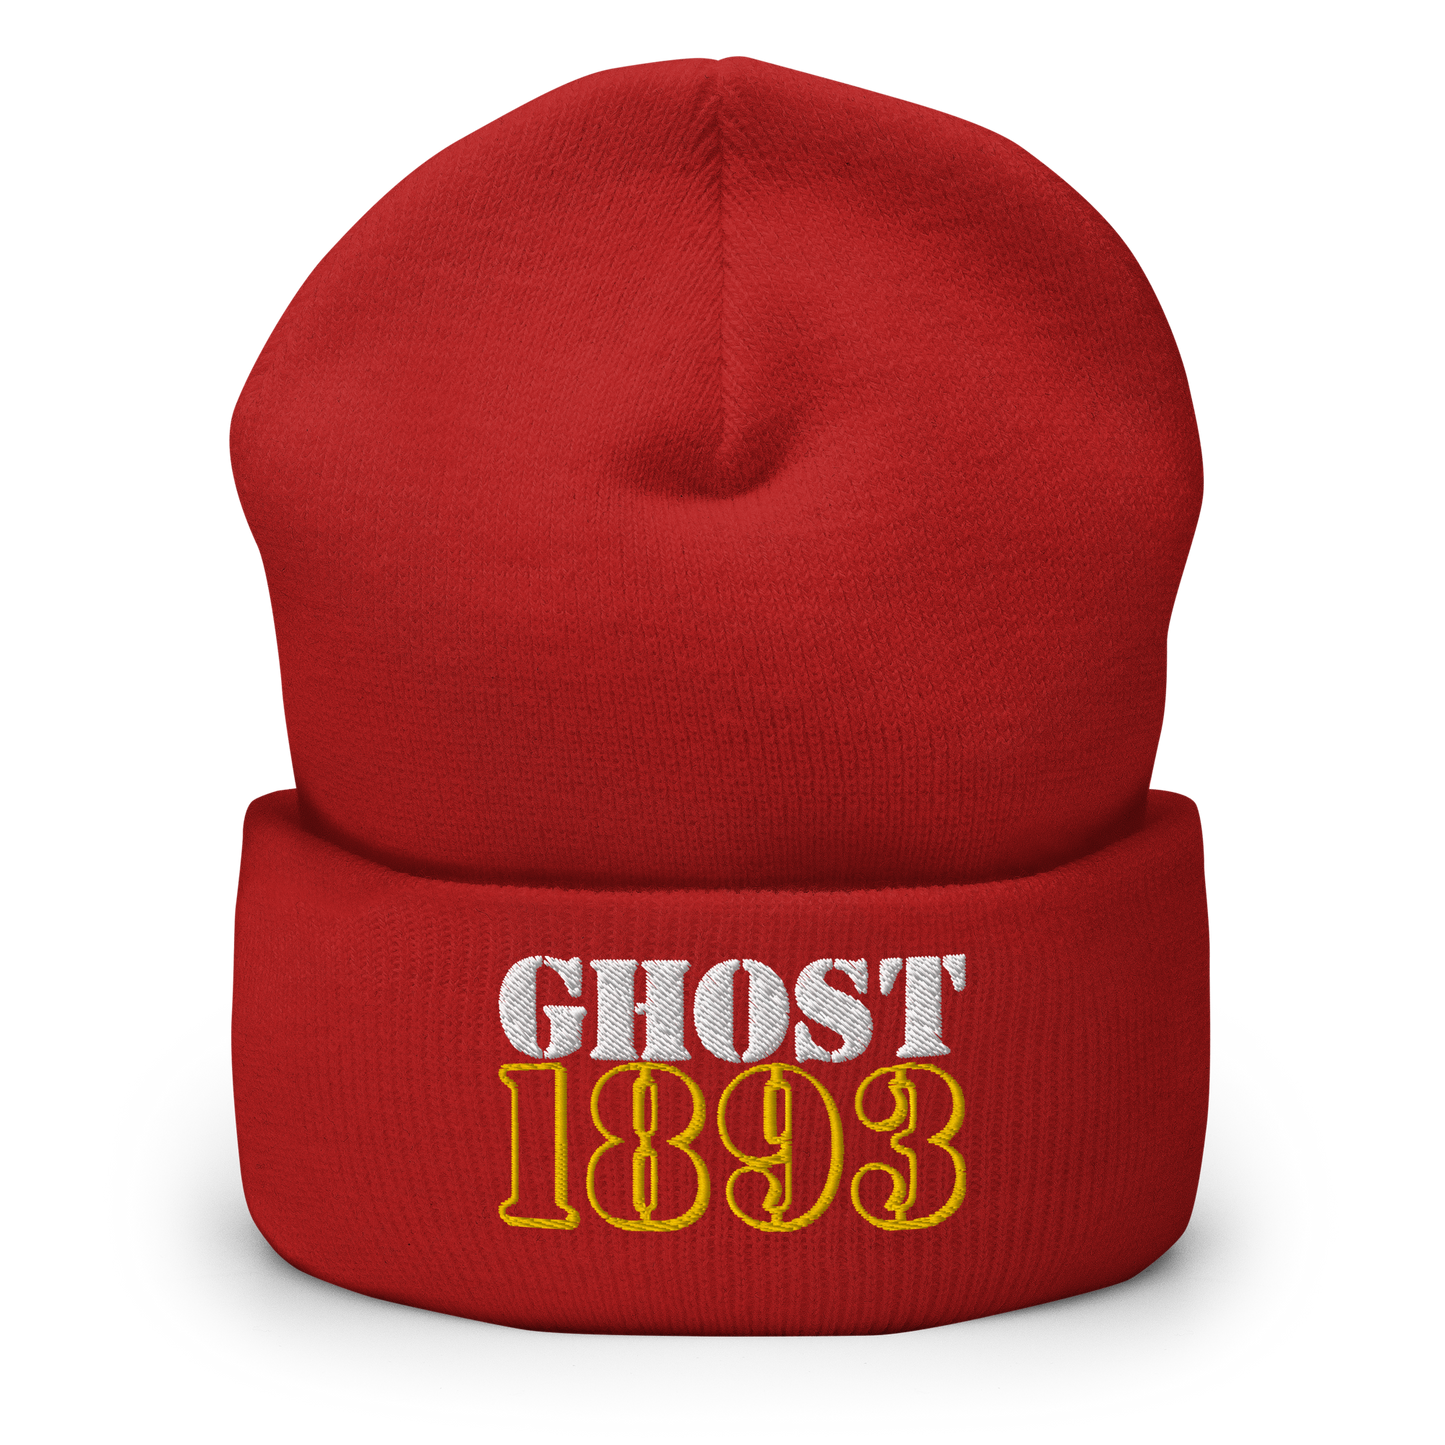 Ghost 1893 Beanie